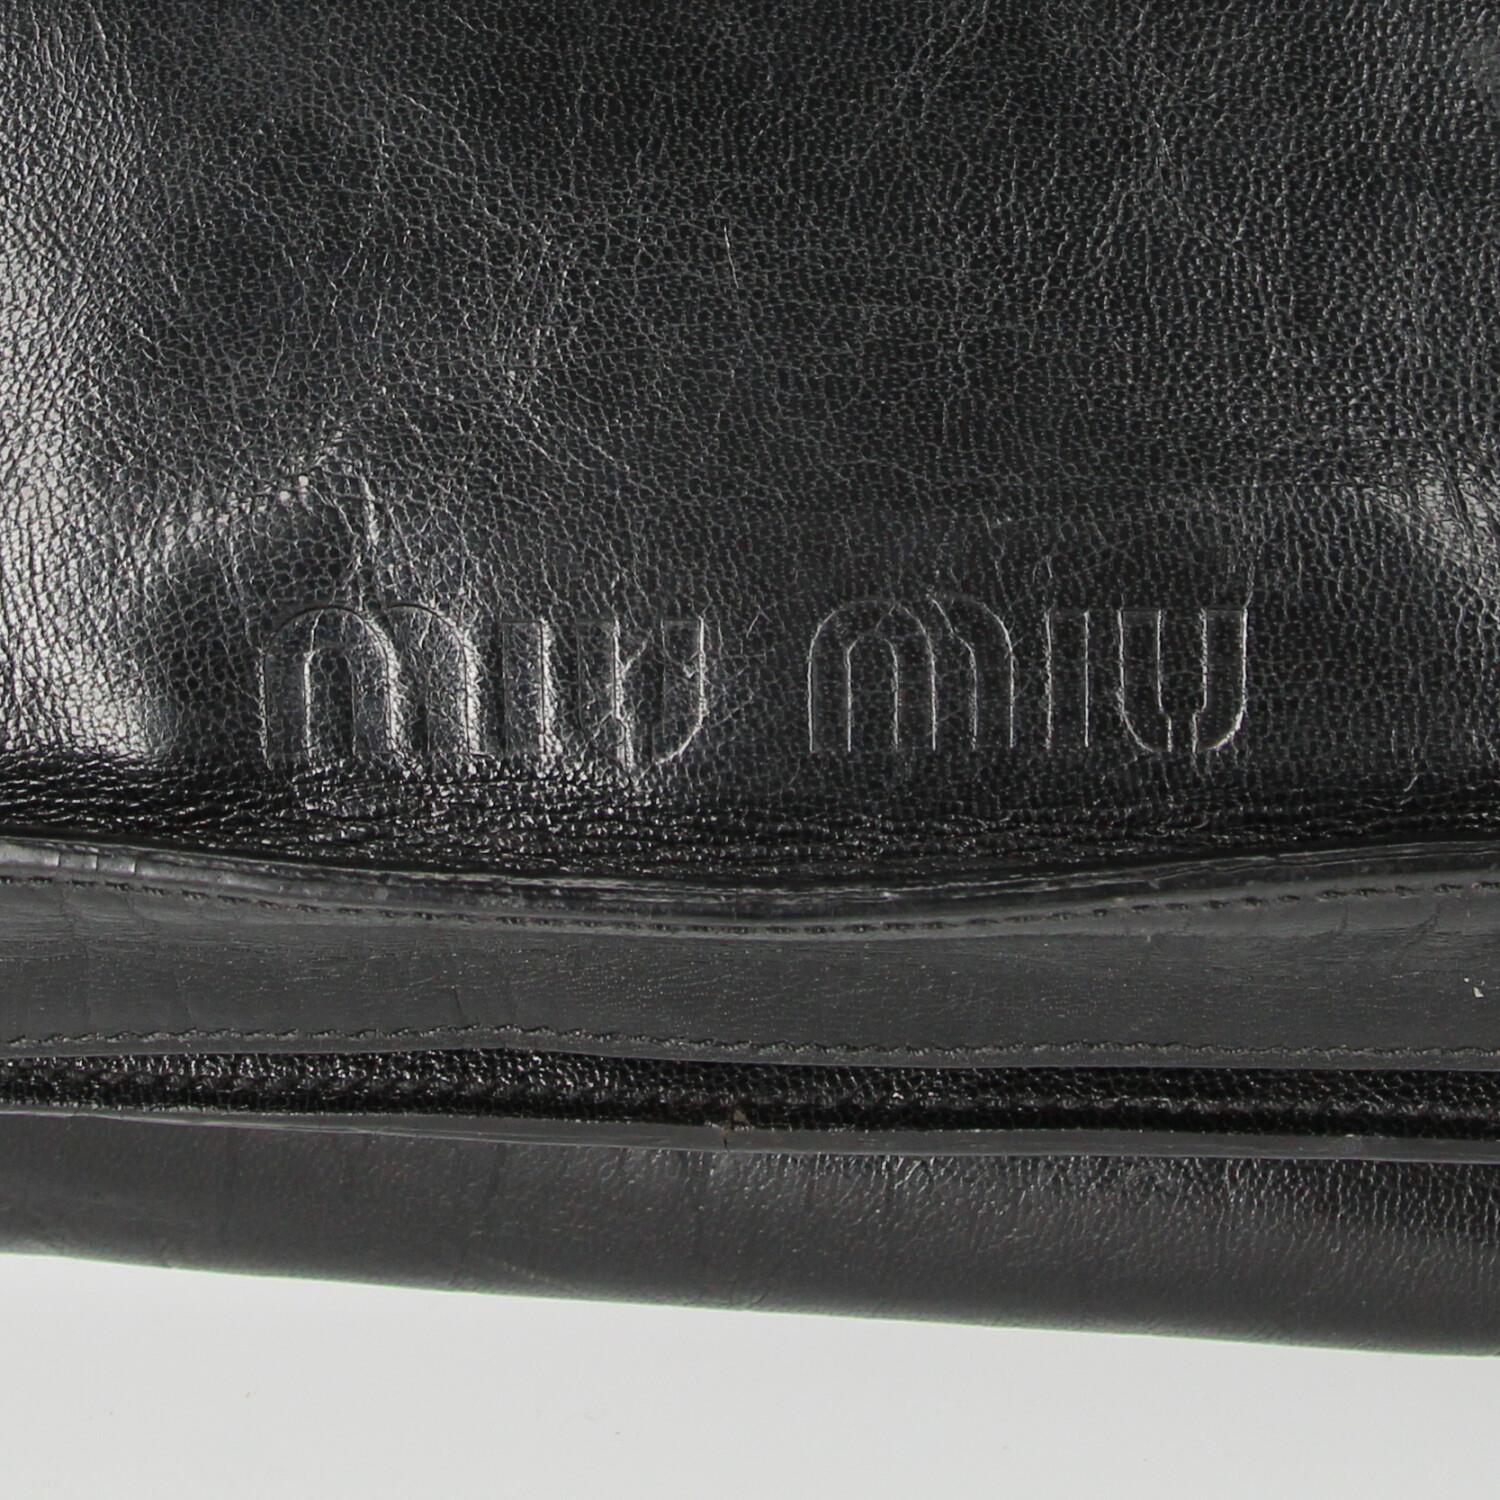 MIU MIU 90s black leather shoulder bag camping.com